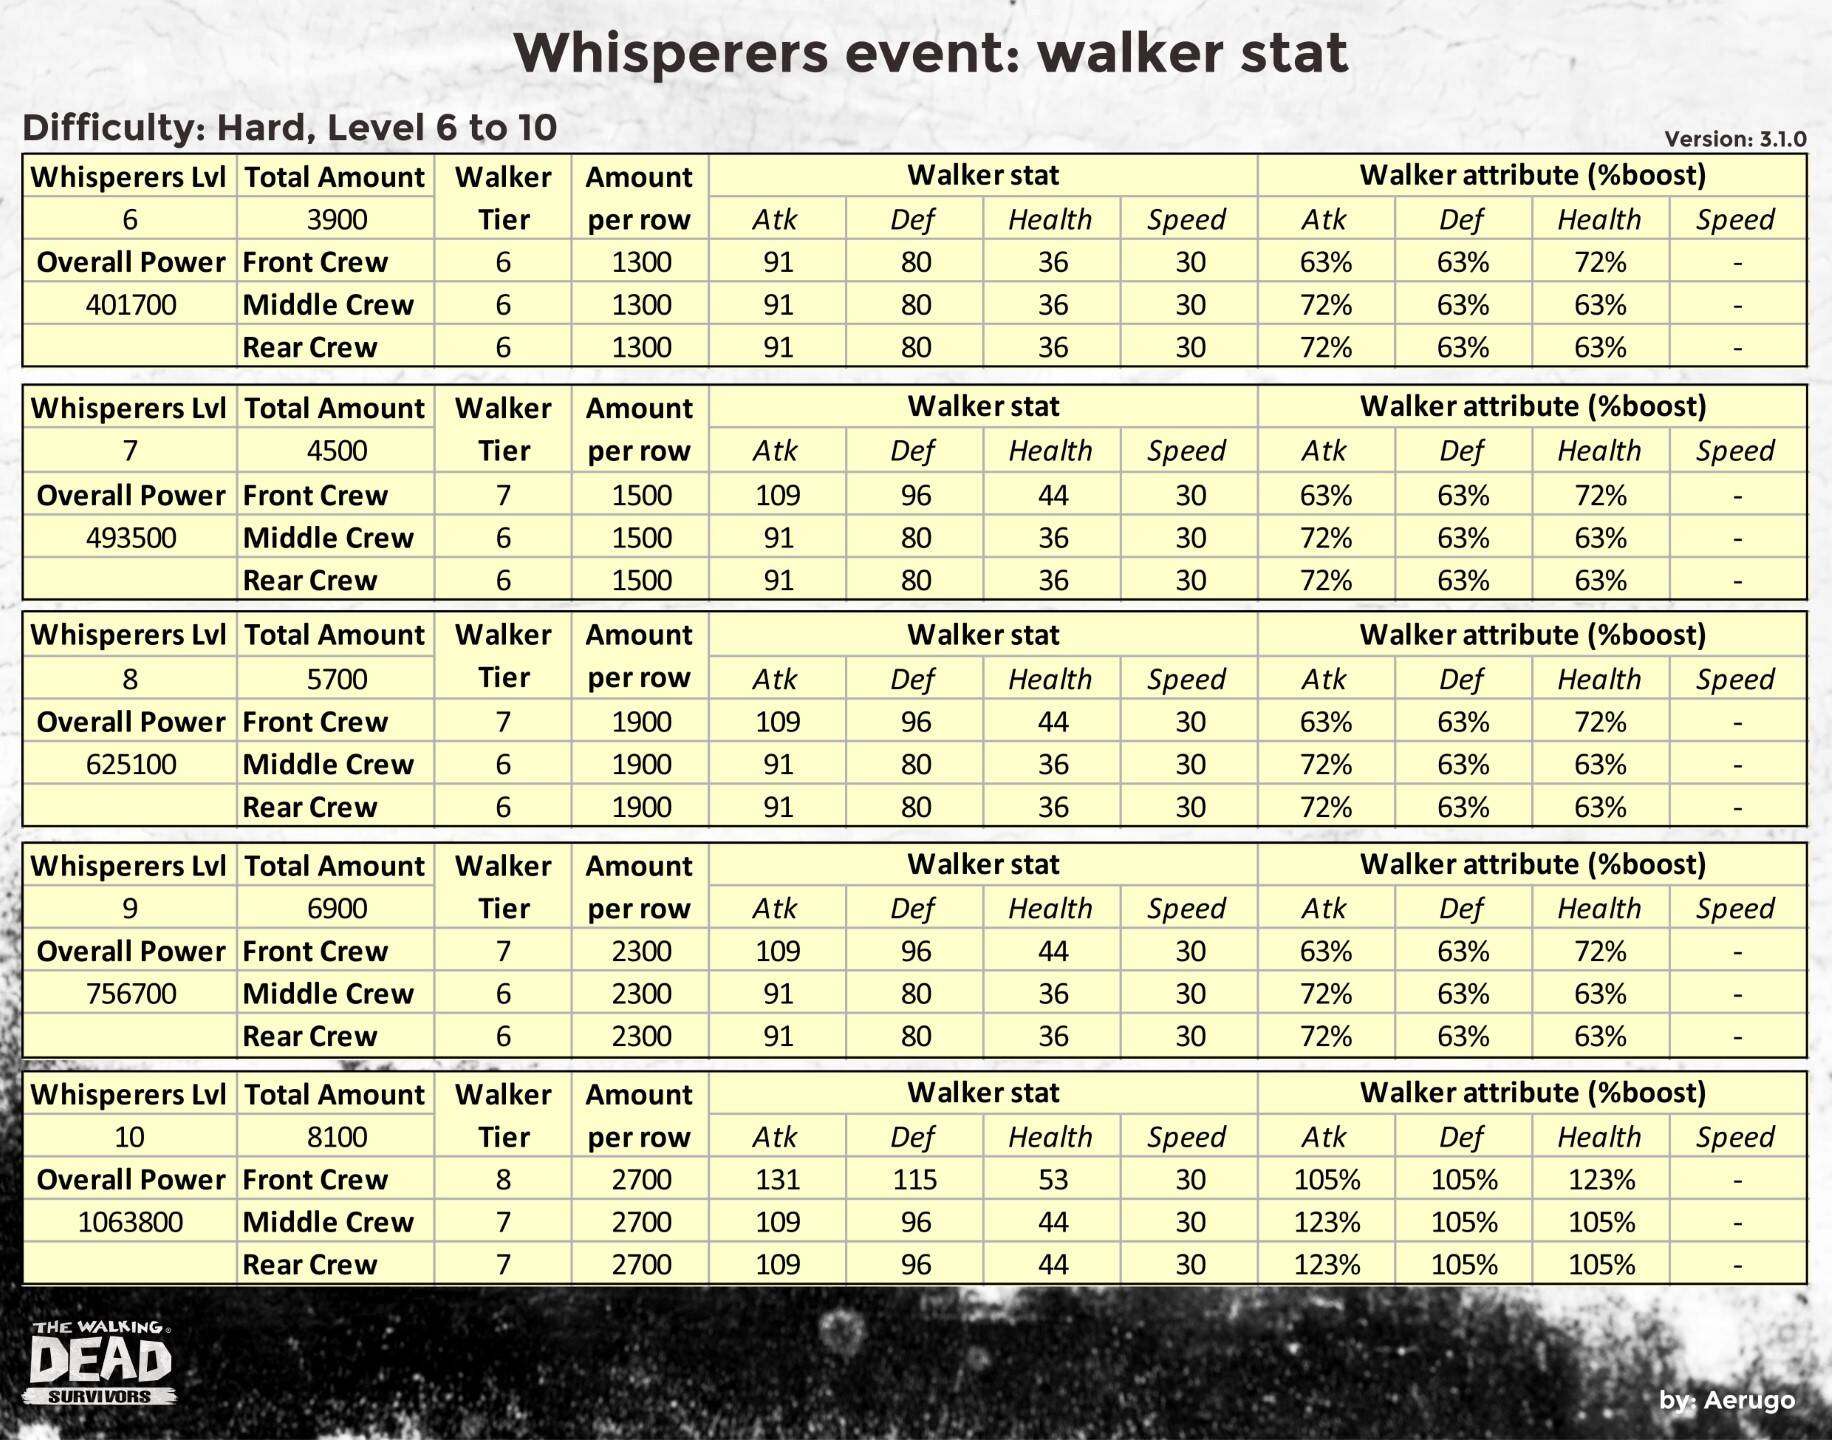 Whisperers_walkerstat_v3.1.0_part10 (1).jpg